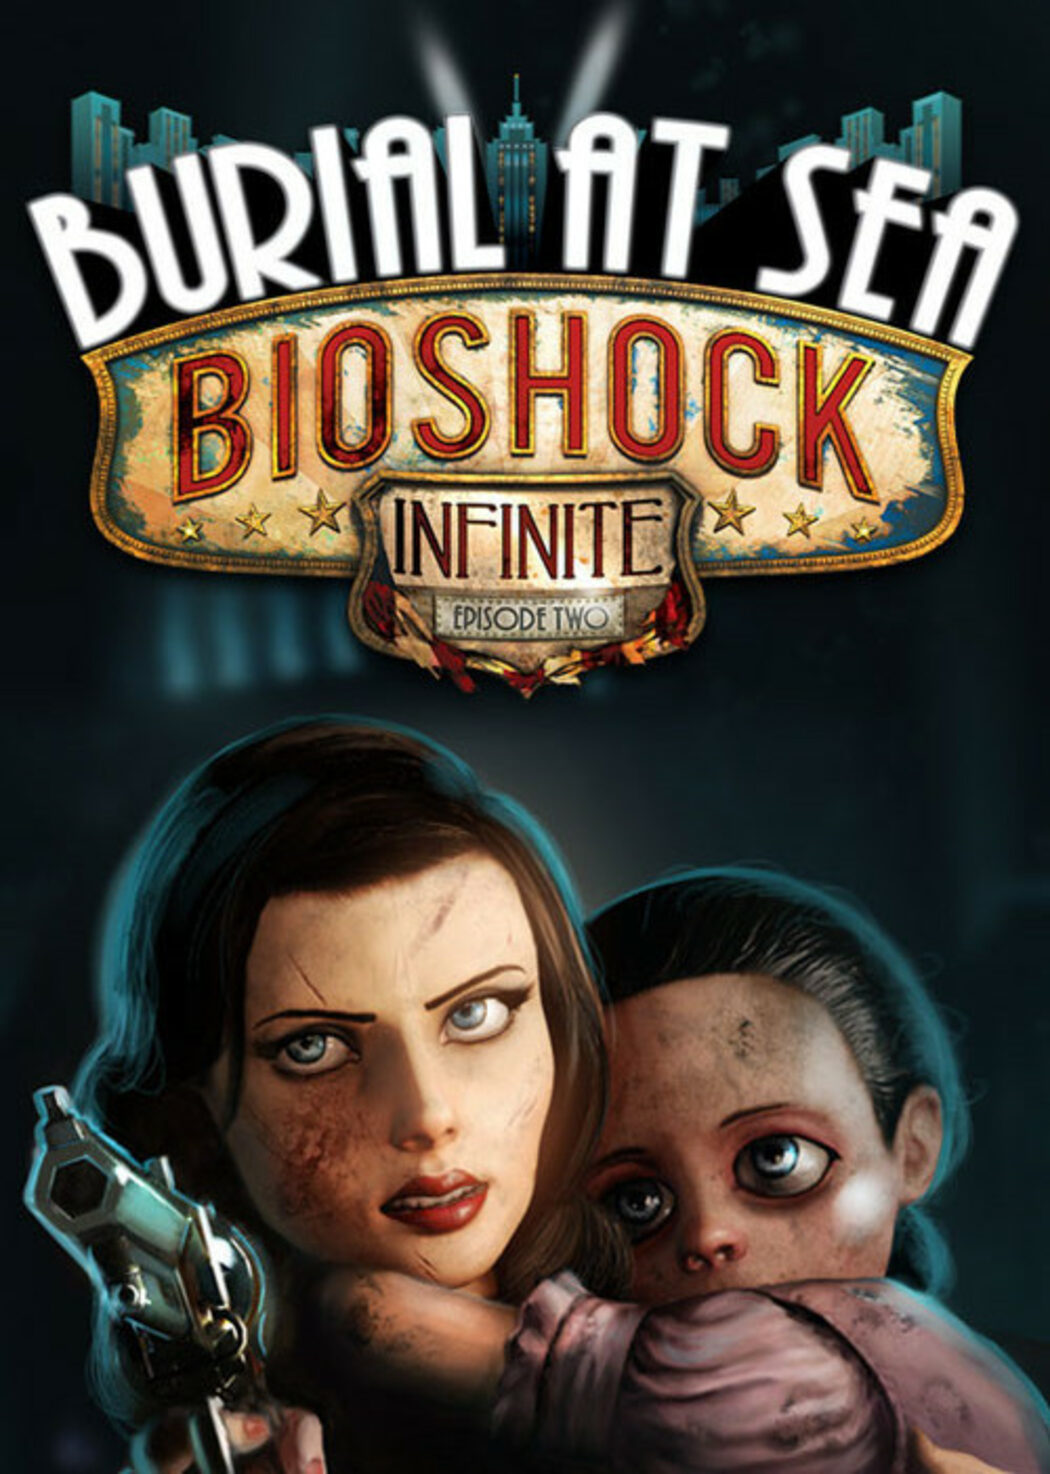 BioShock Infinite: Burial at Sea - Episode 2